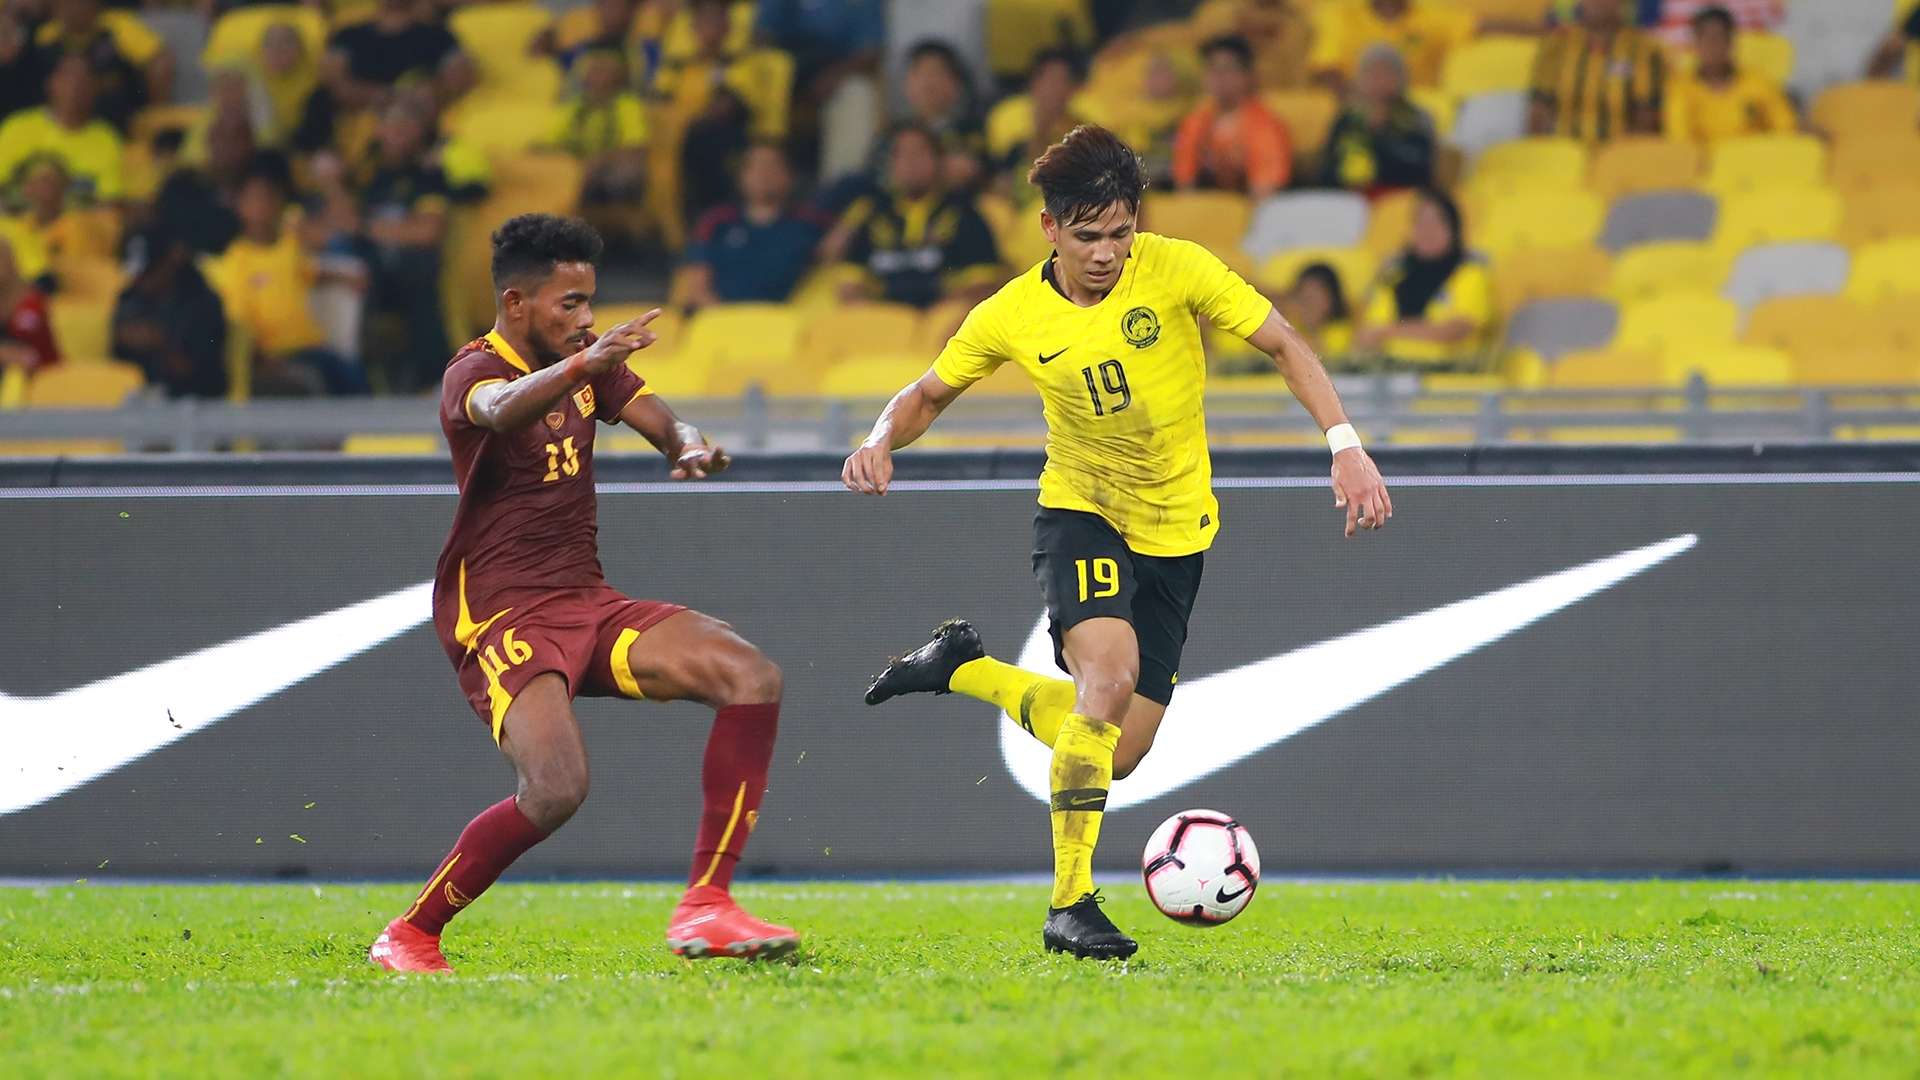 Akhyar Rashid, Malaysia v Sri Lanka, International Friendly, 5 Oct 2019